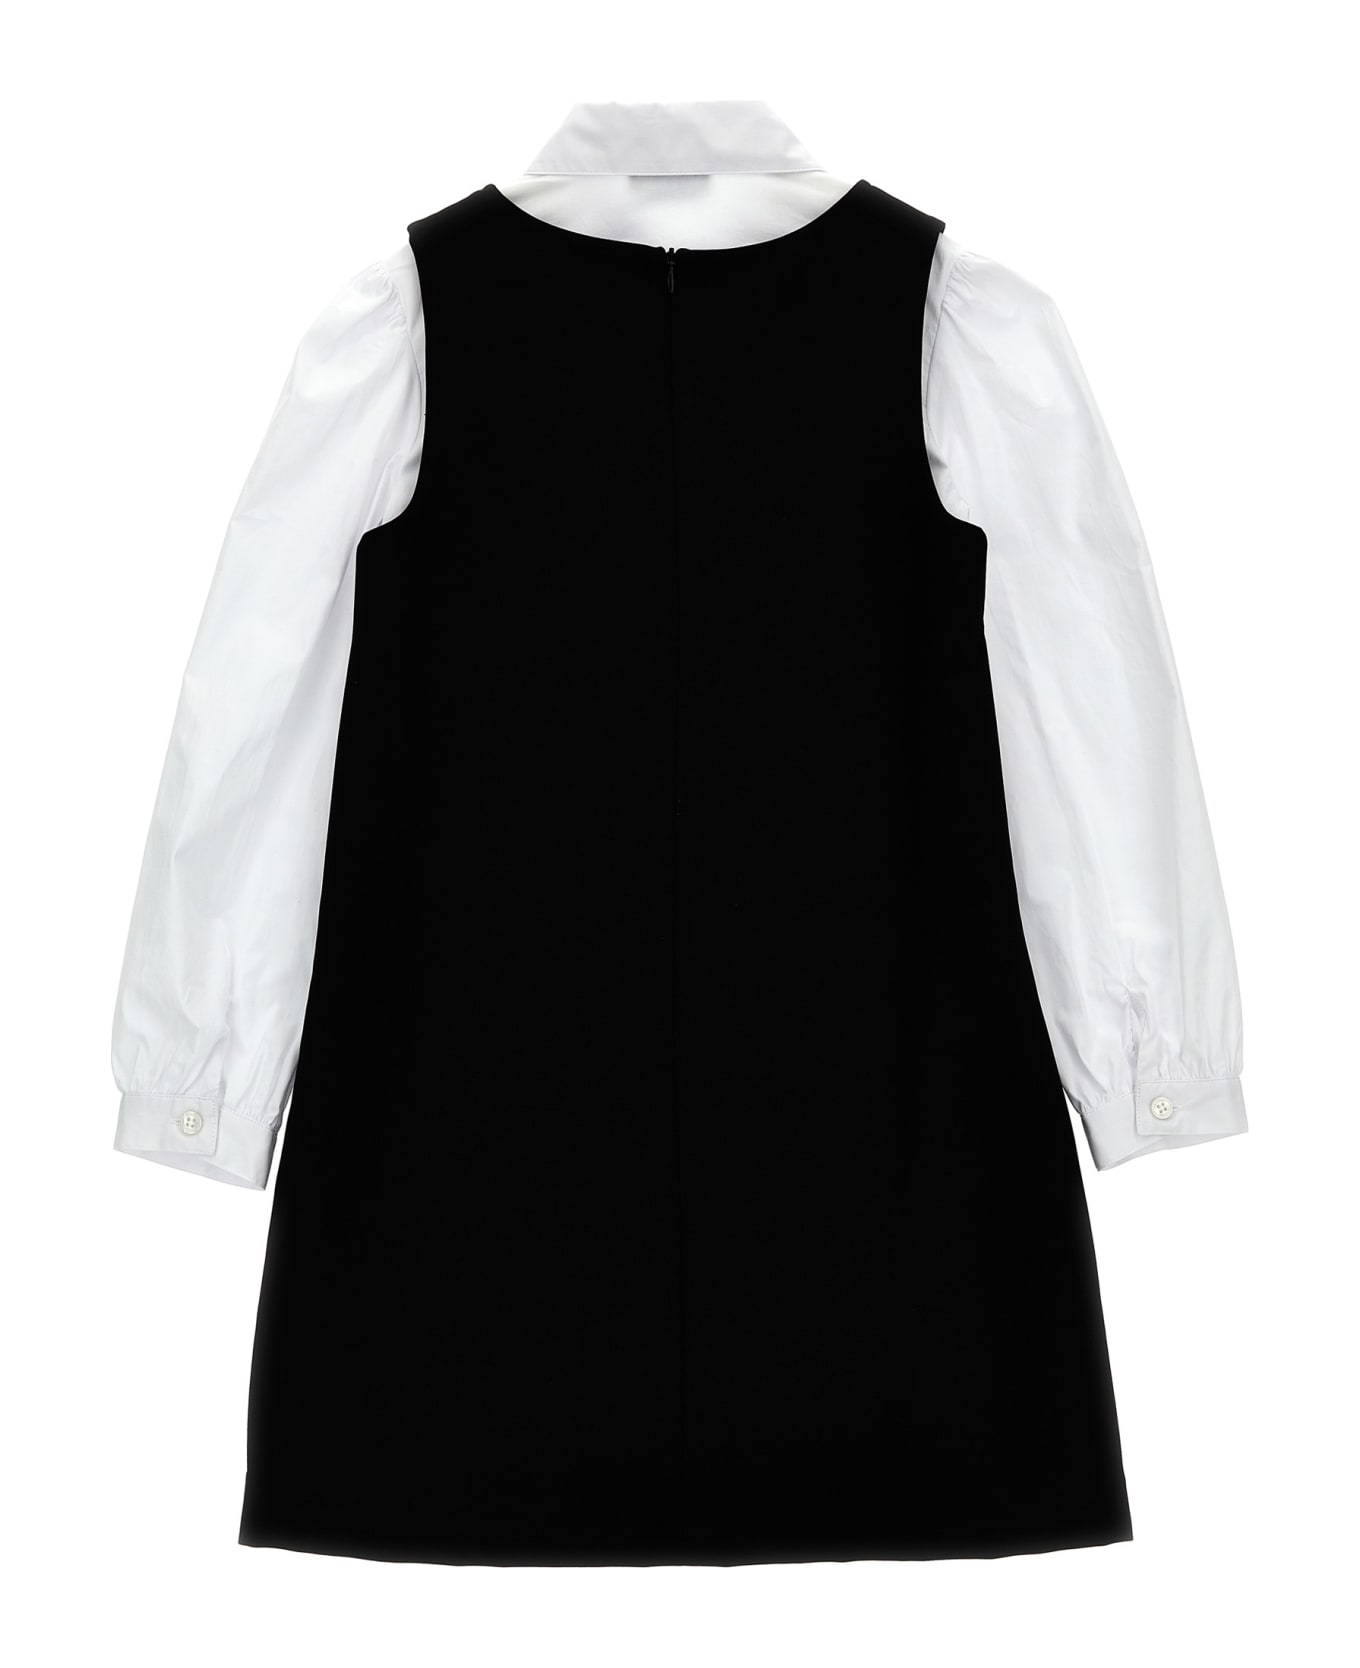 Moschino Logo Dress And Shirt - White/Black